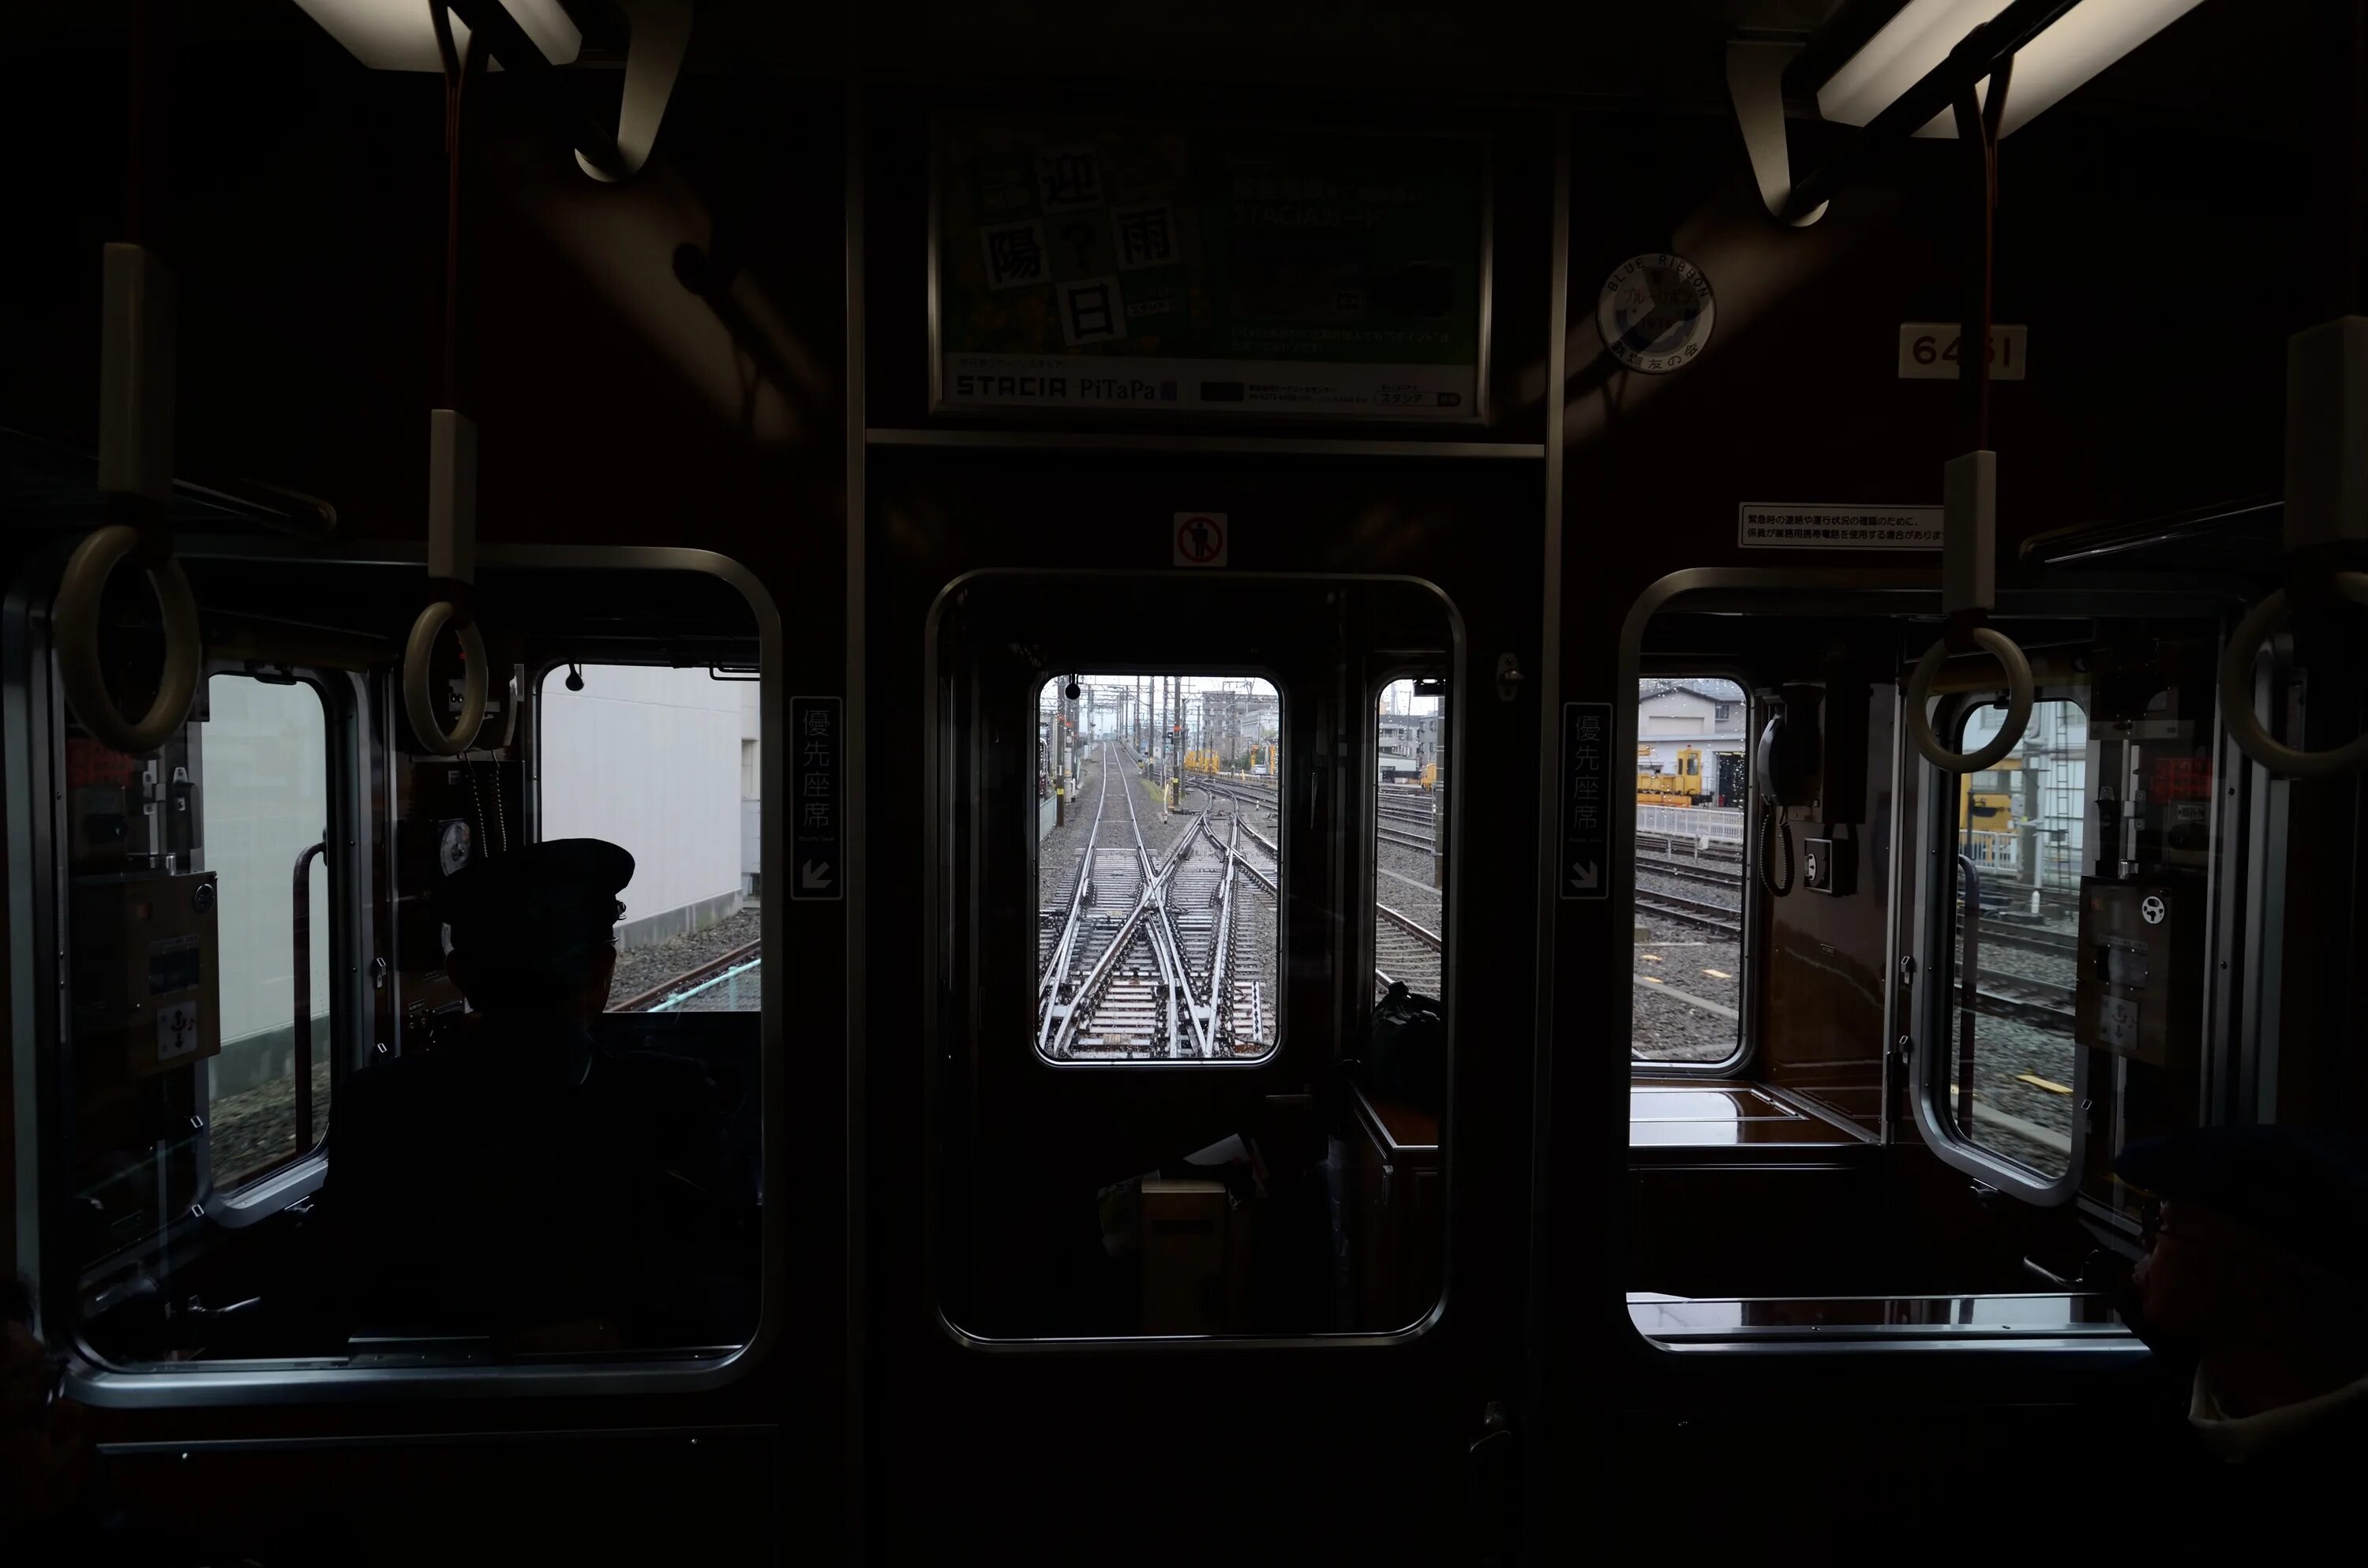 Окно вагона метро. Вагон метро в темноте. Вид из окна вагона метро. Поезд метро в темноте. Поезд в темноте